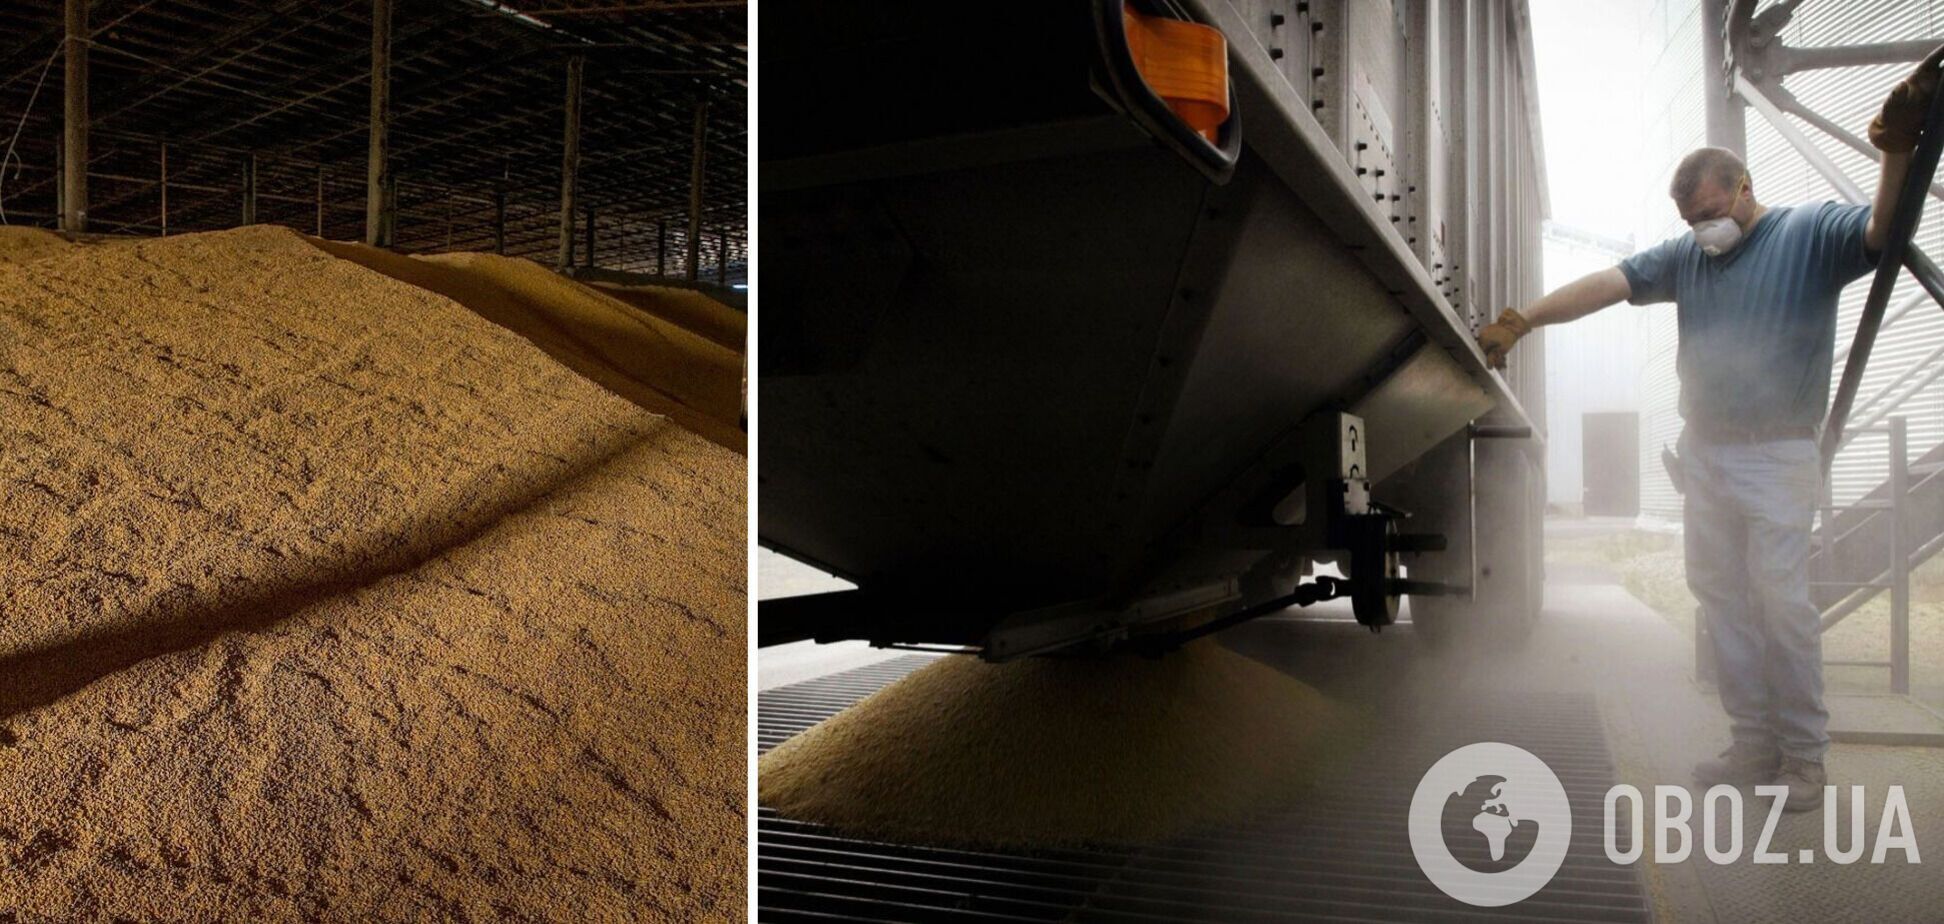 Украина экспортирует зерно только по суше